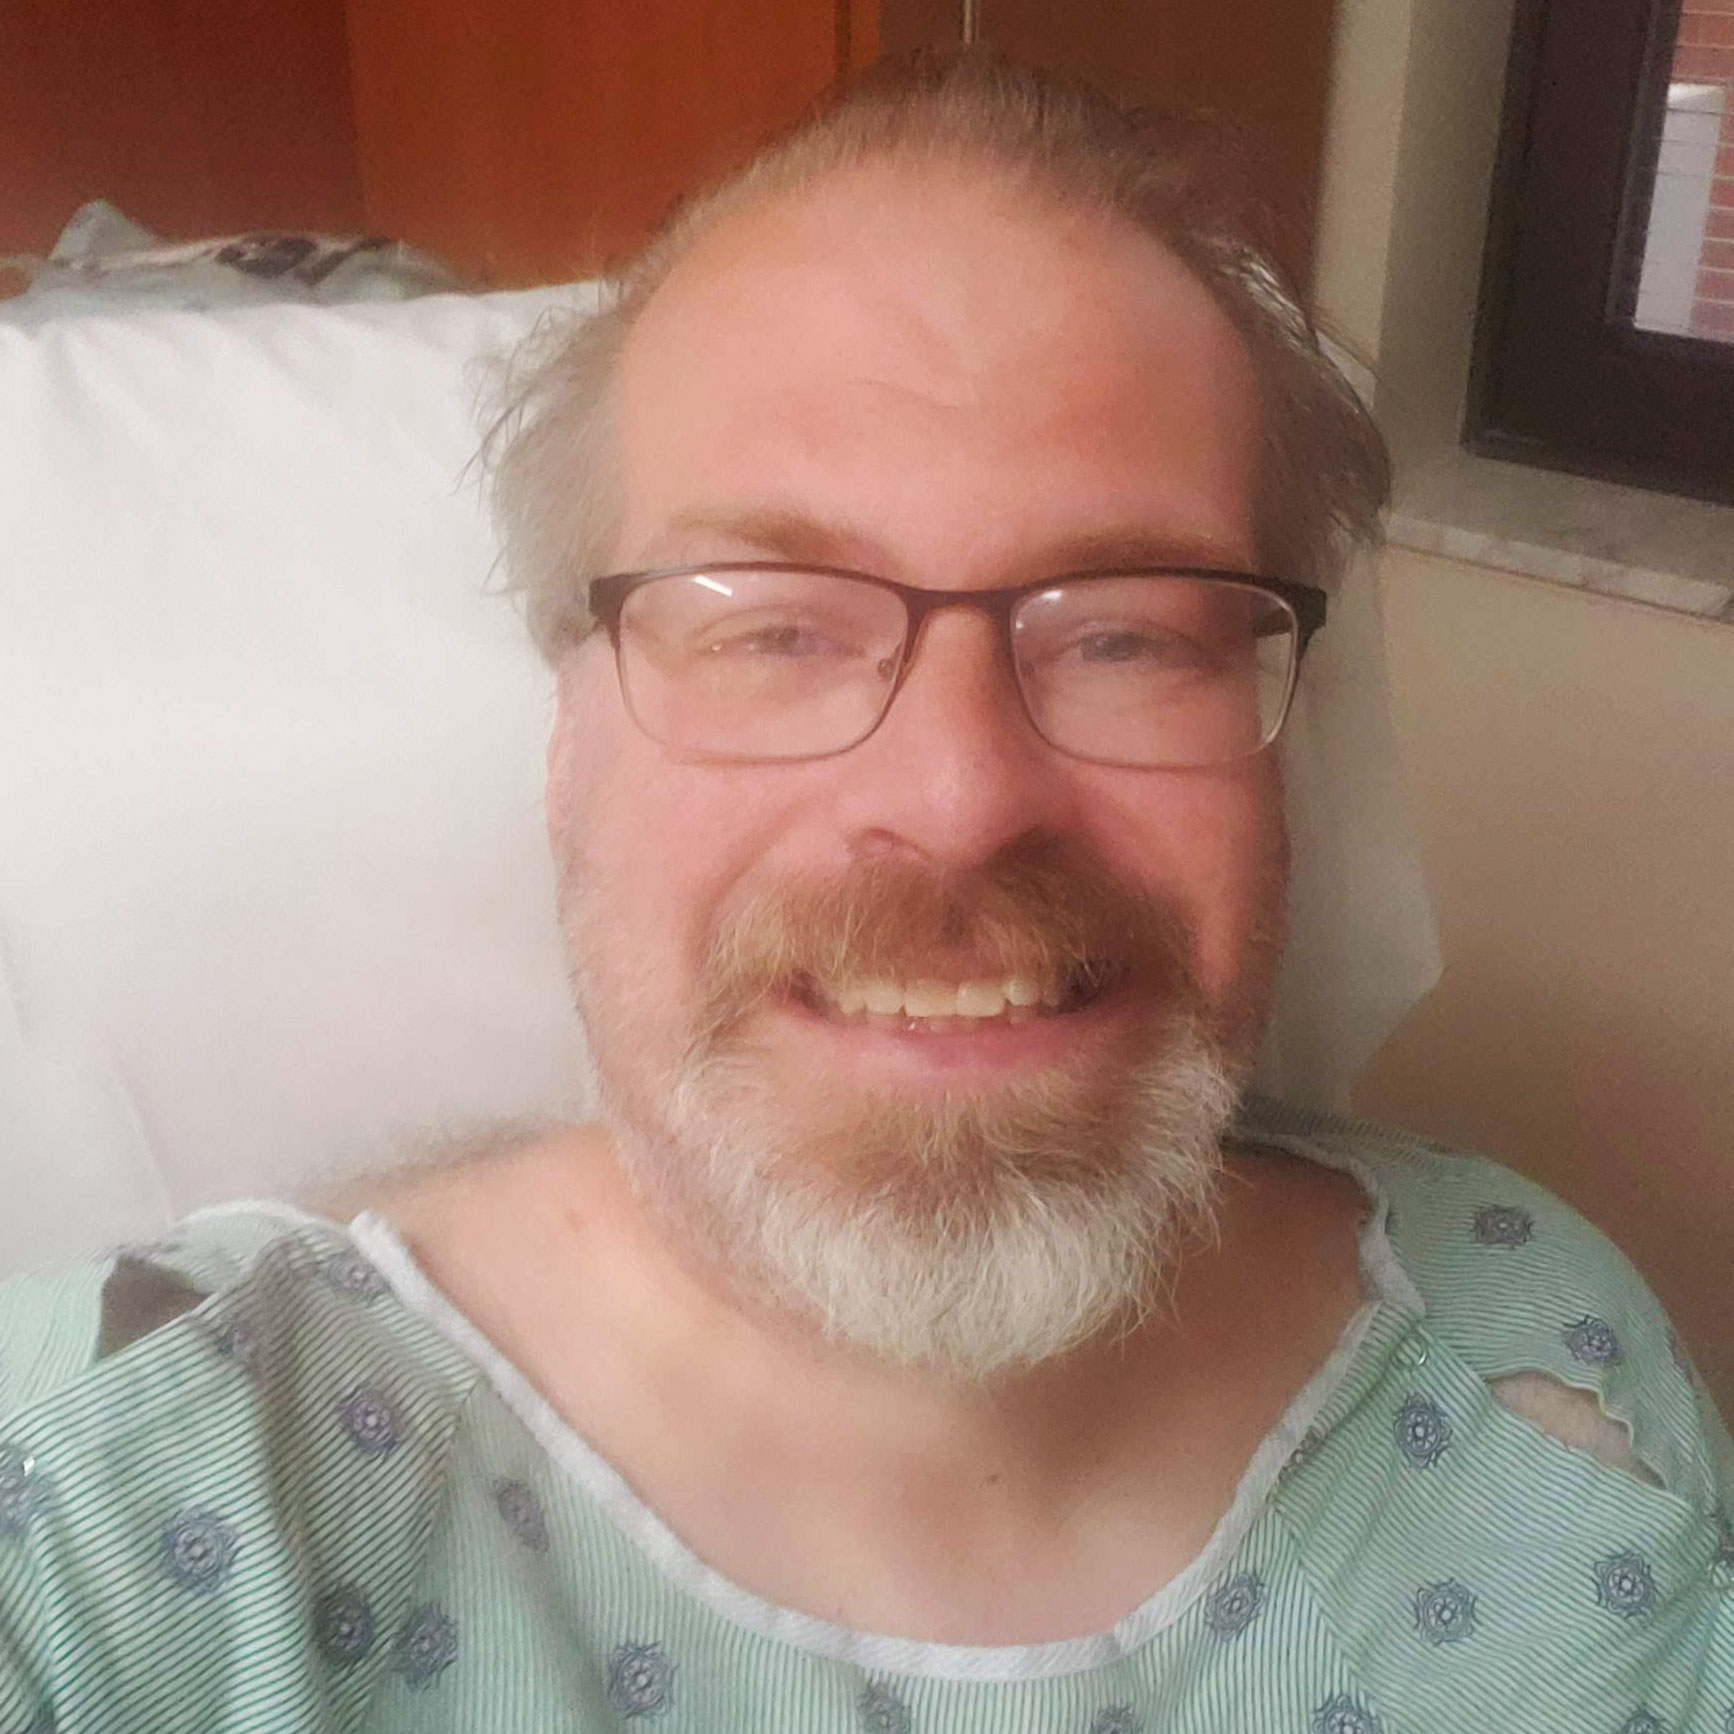 Selfie I took of myself in my hospital room